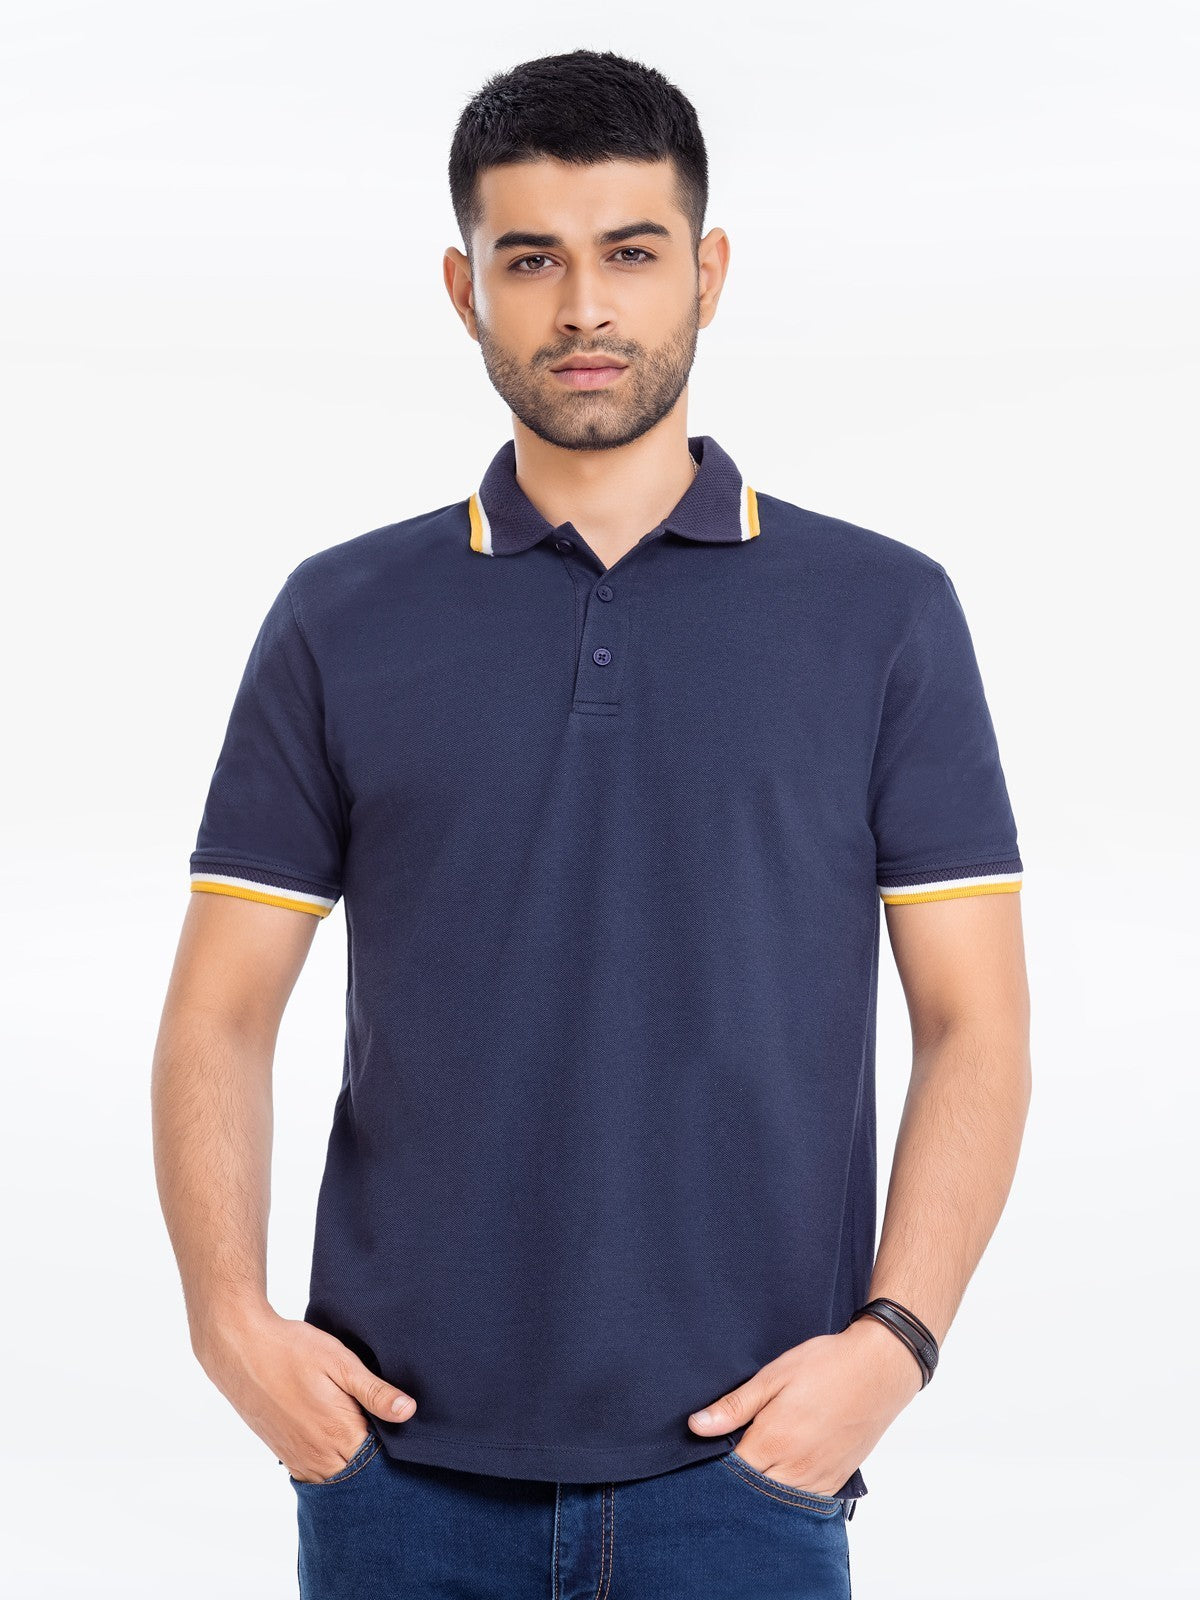 Men's Navy Polo Shirt - EMTPS23-044